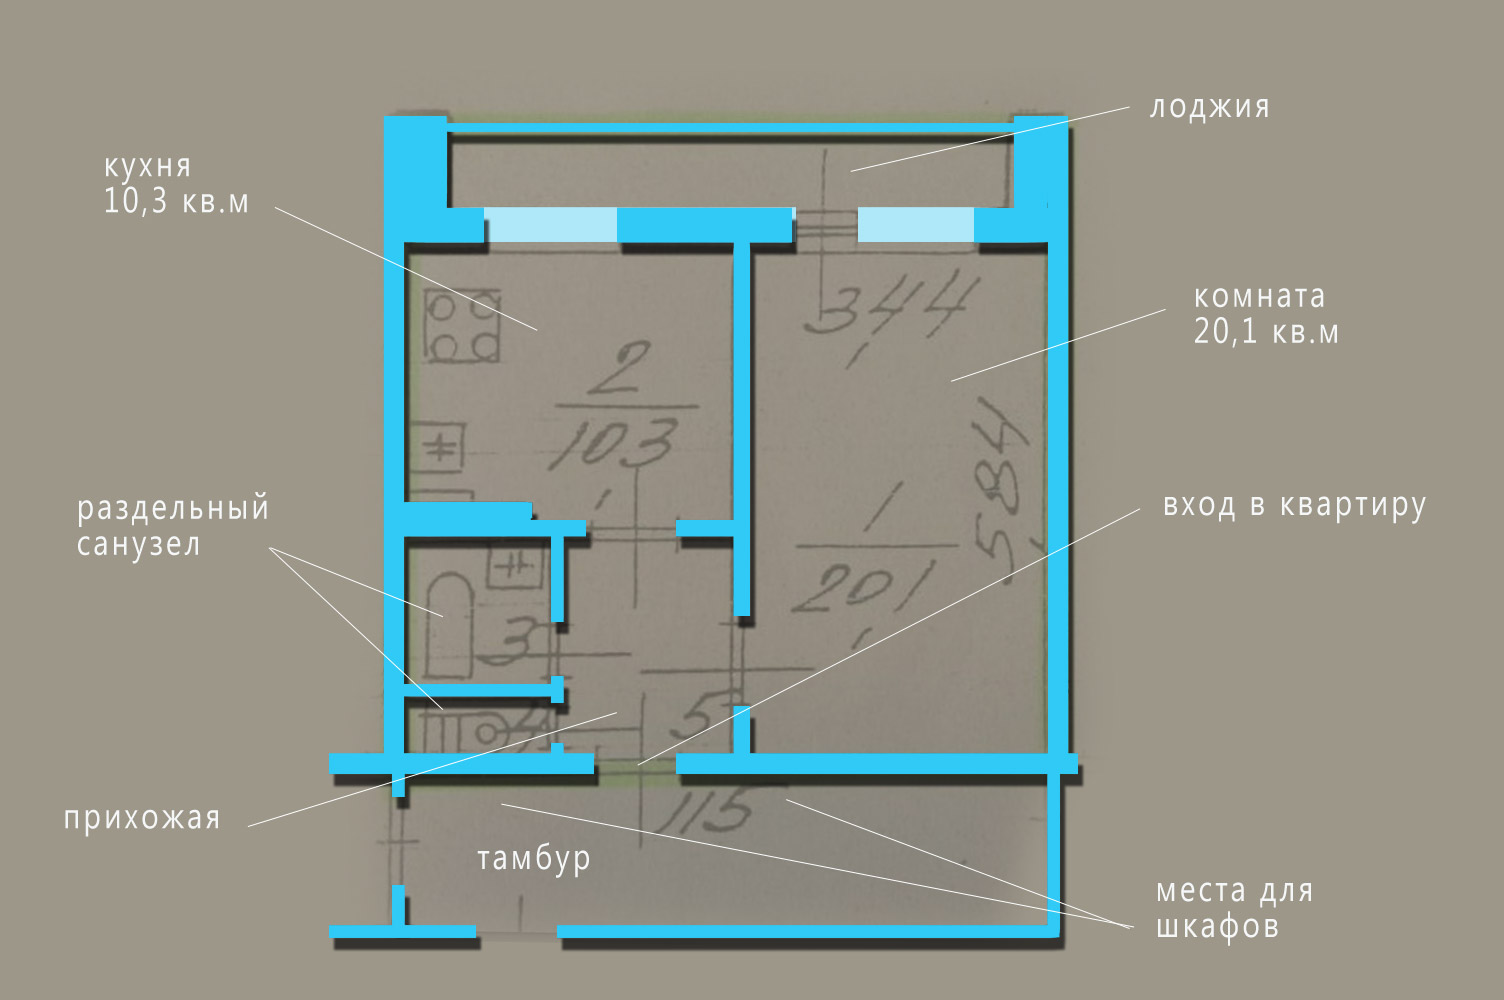 Удачная планировка с центральным расположением прихожей, просторной 20-метровой комнатой с выходом на большую, полностью застекленную лоджию, 10-метровой кухней и раздельным санузлом